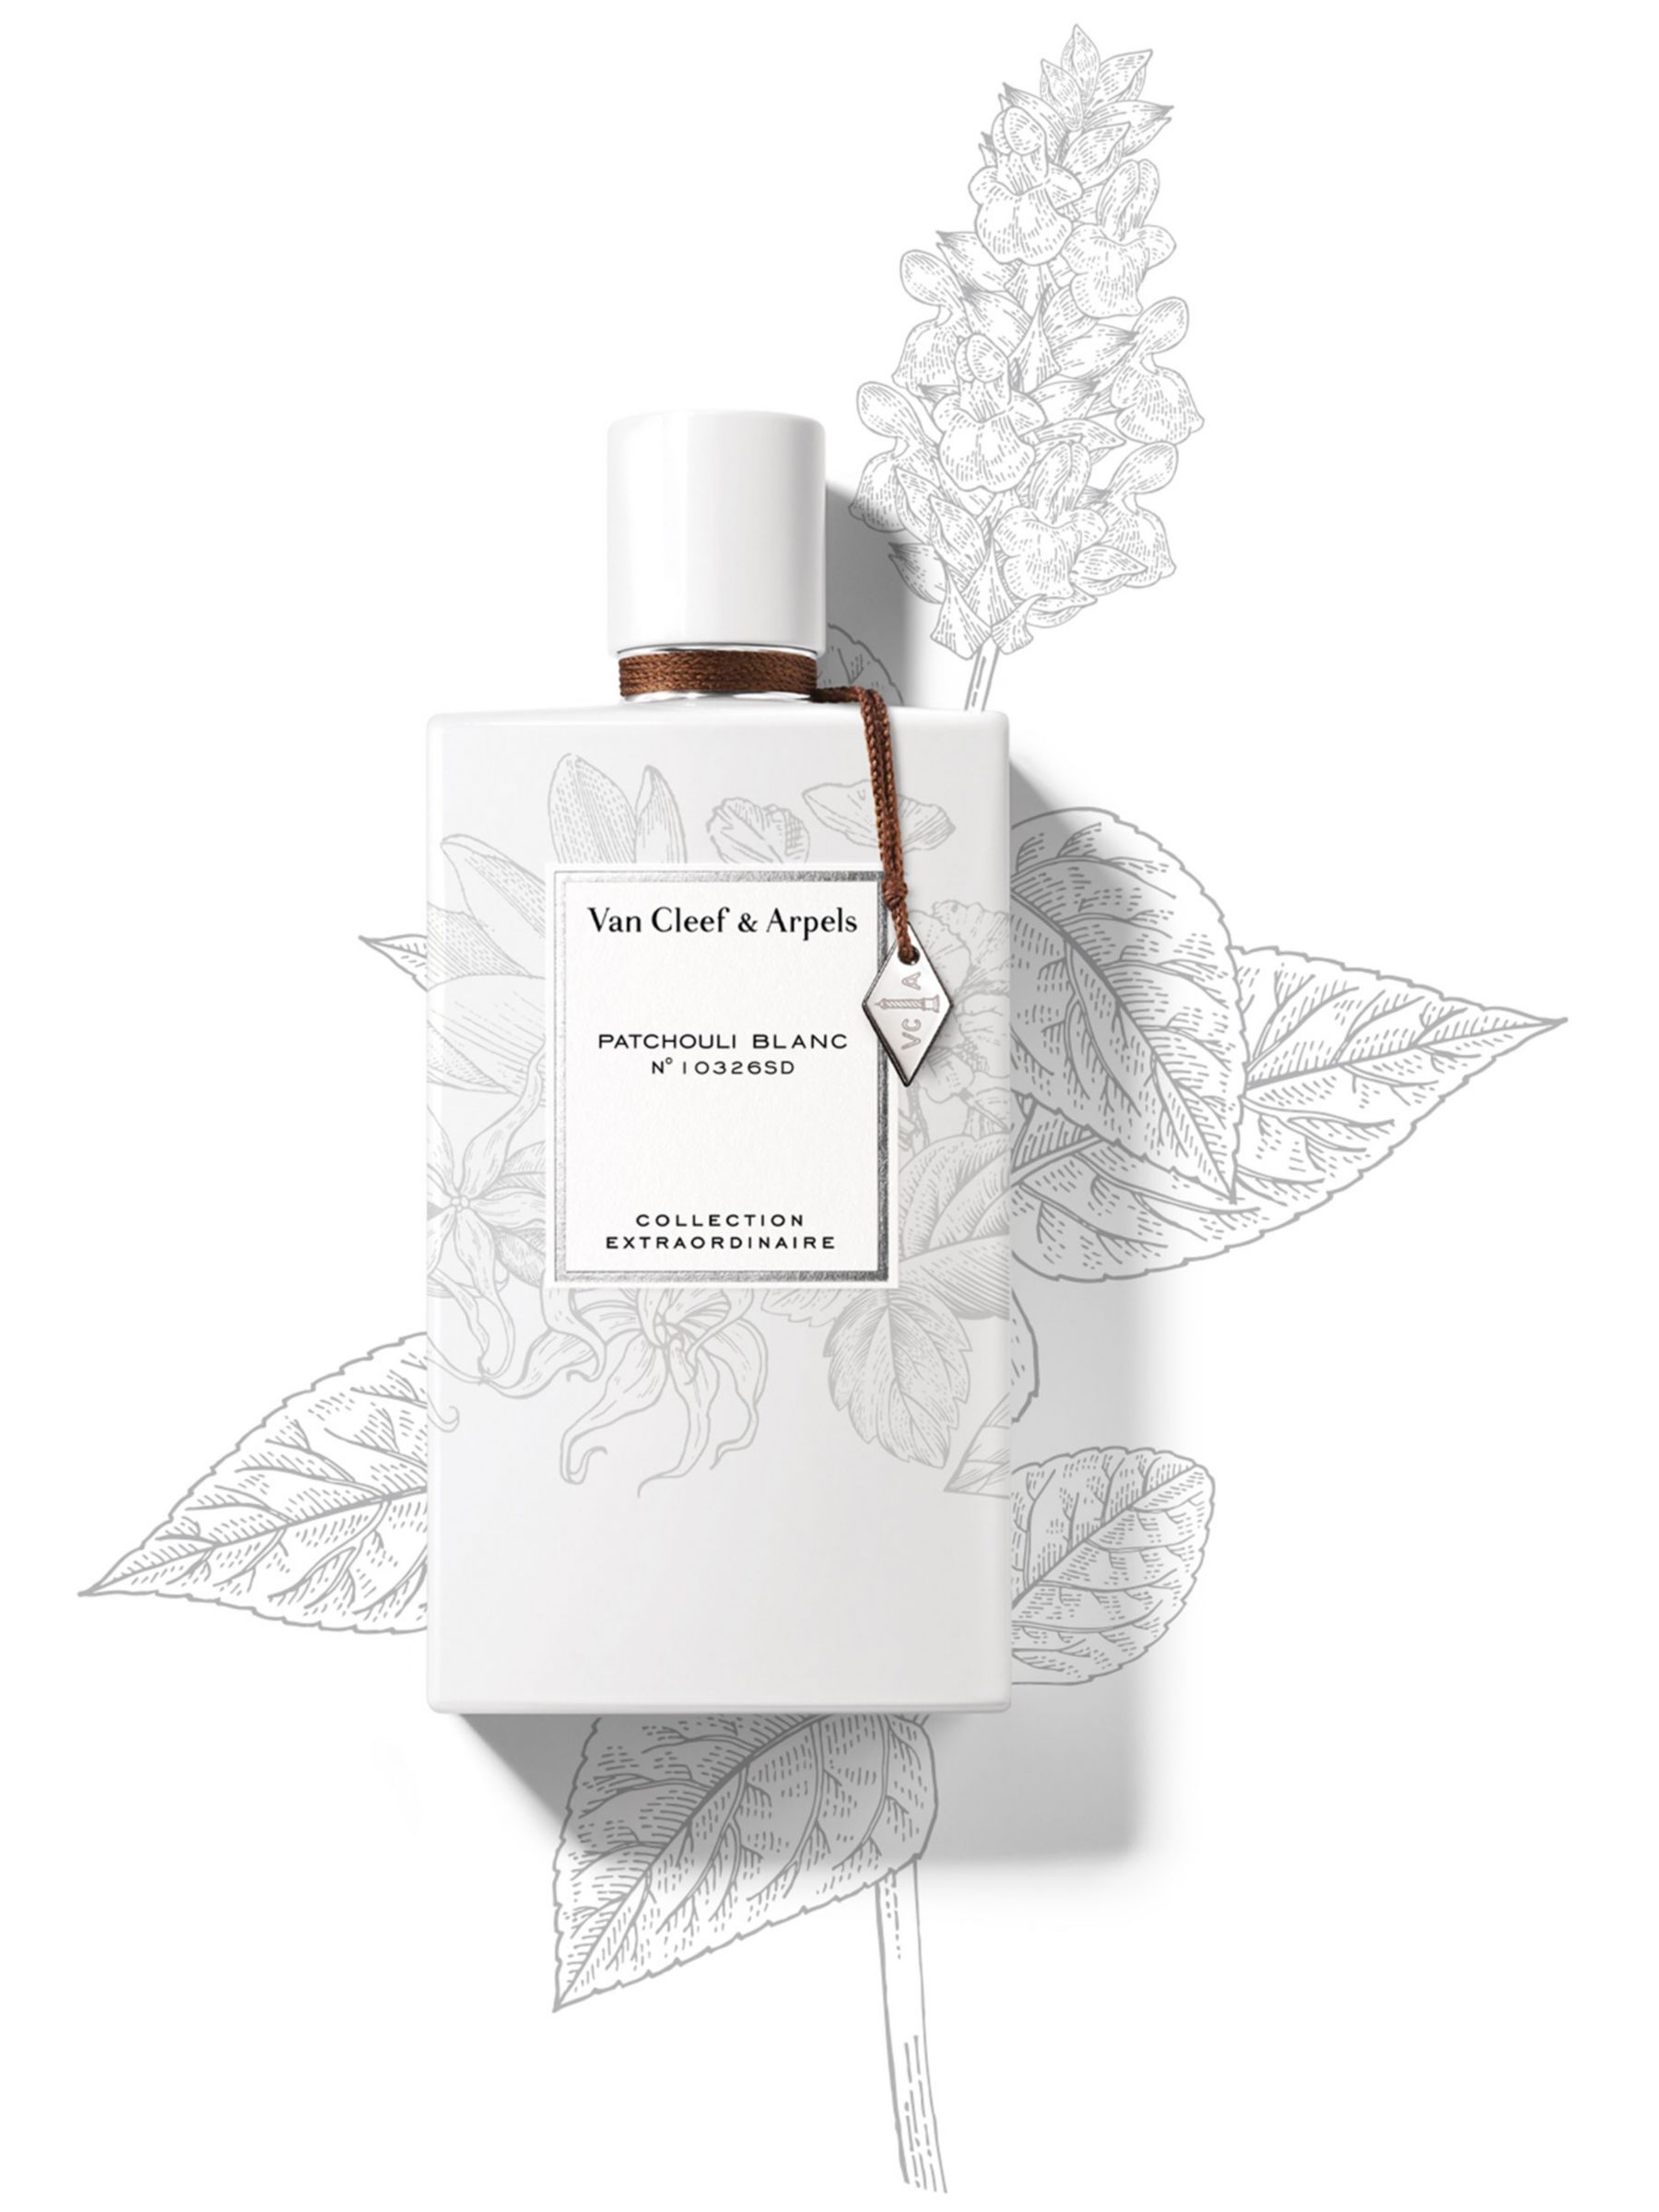 Van Cleef & Arpels Collection Extraordinaire Patchouli Blanc Eau de Parfum, 75ml 3